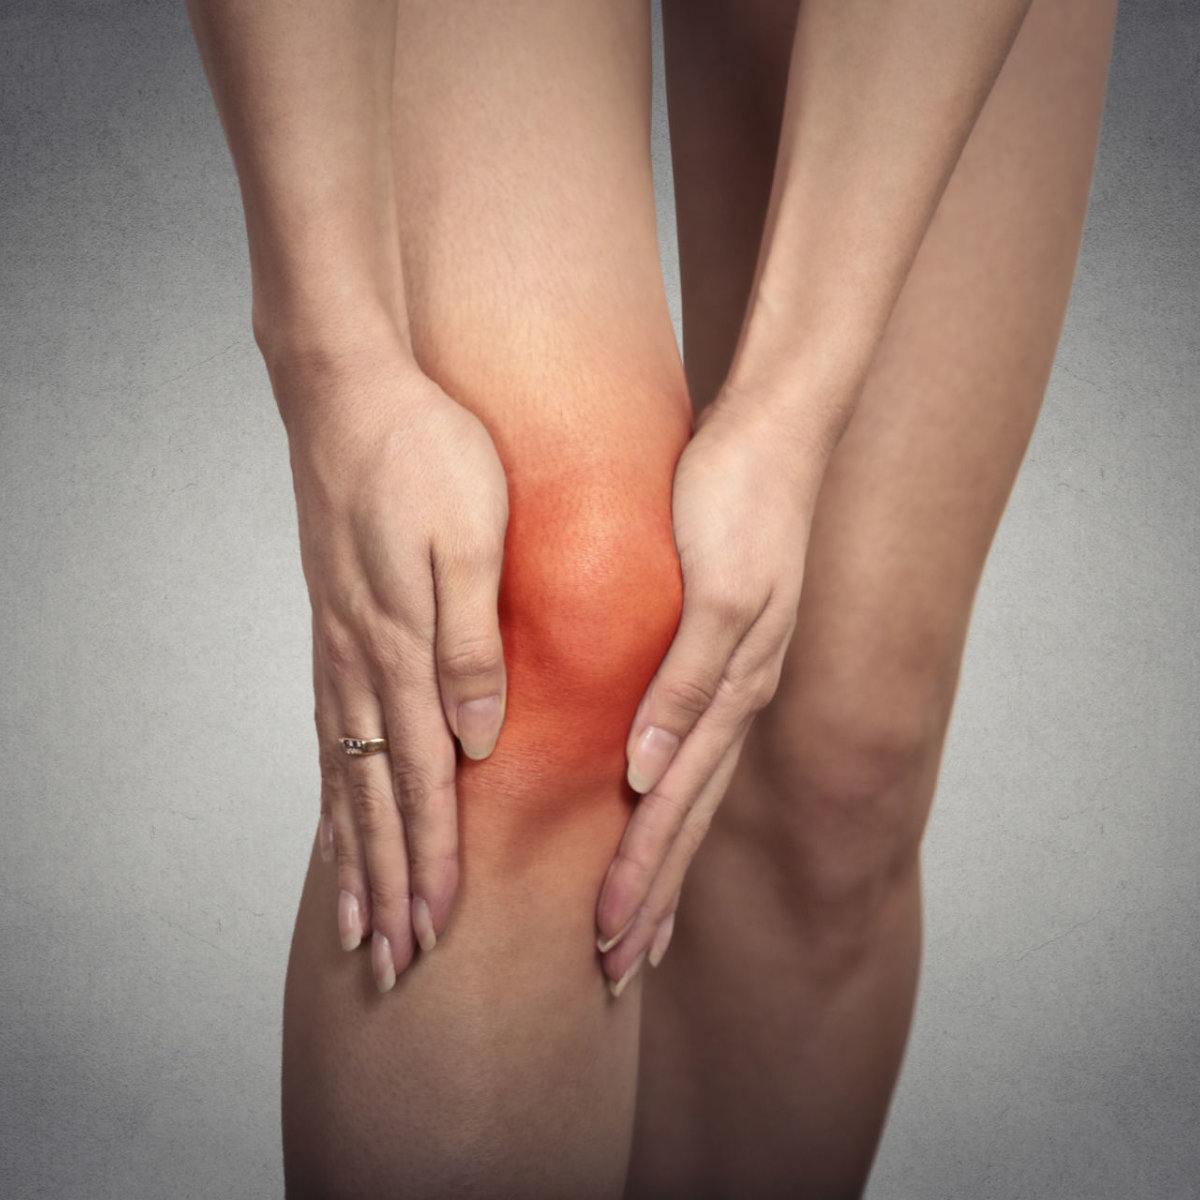 skauda sąnarius ką mes turime bijoti gydymas artrozė kojų atsiliepimus